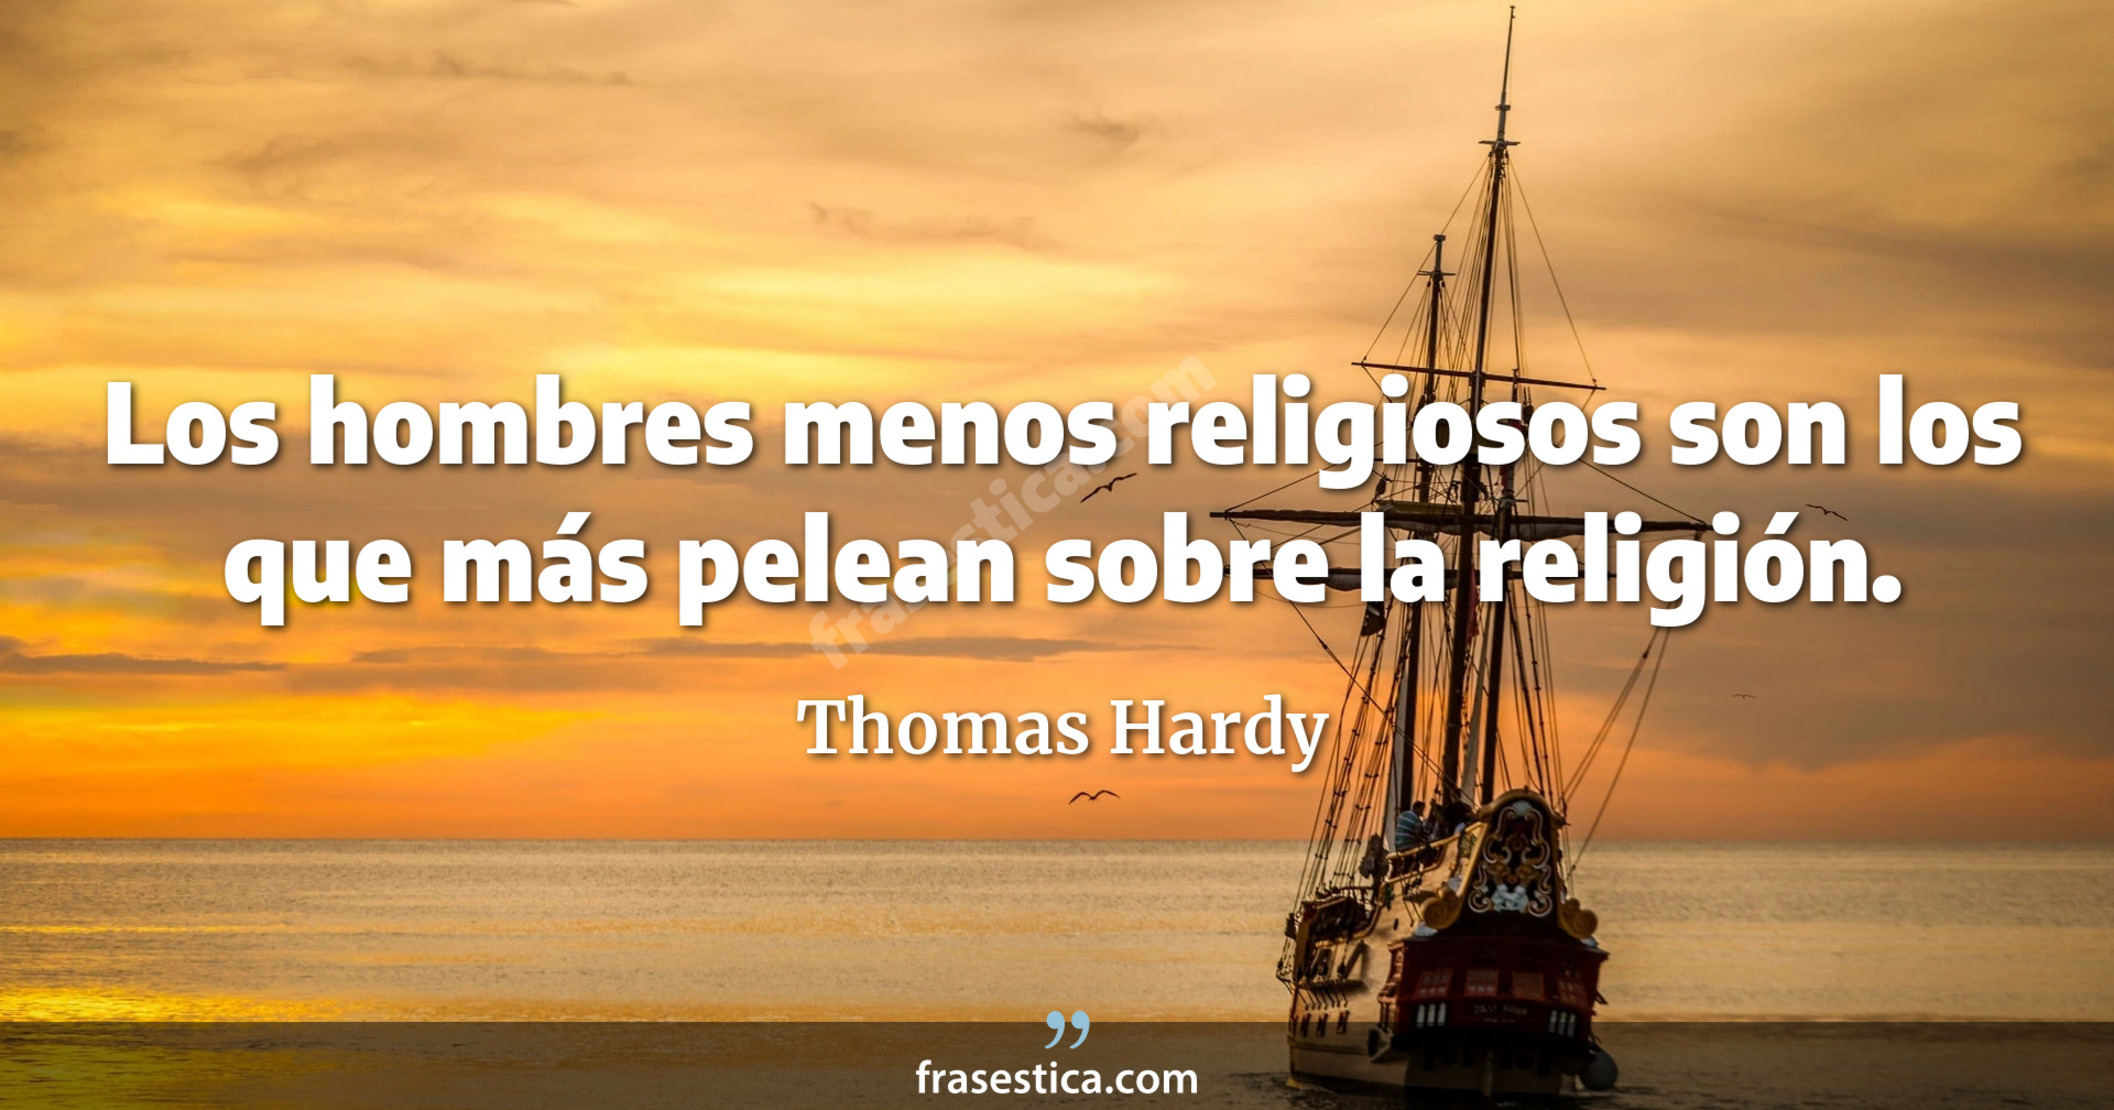 Los hombres menos religiosos son los que más pelean sobre la religión. - Thomas Hardy